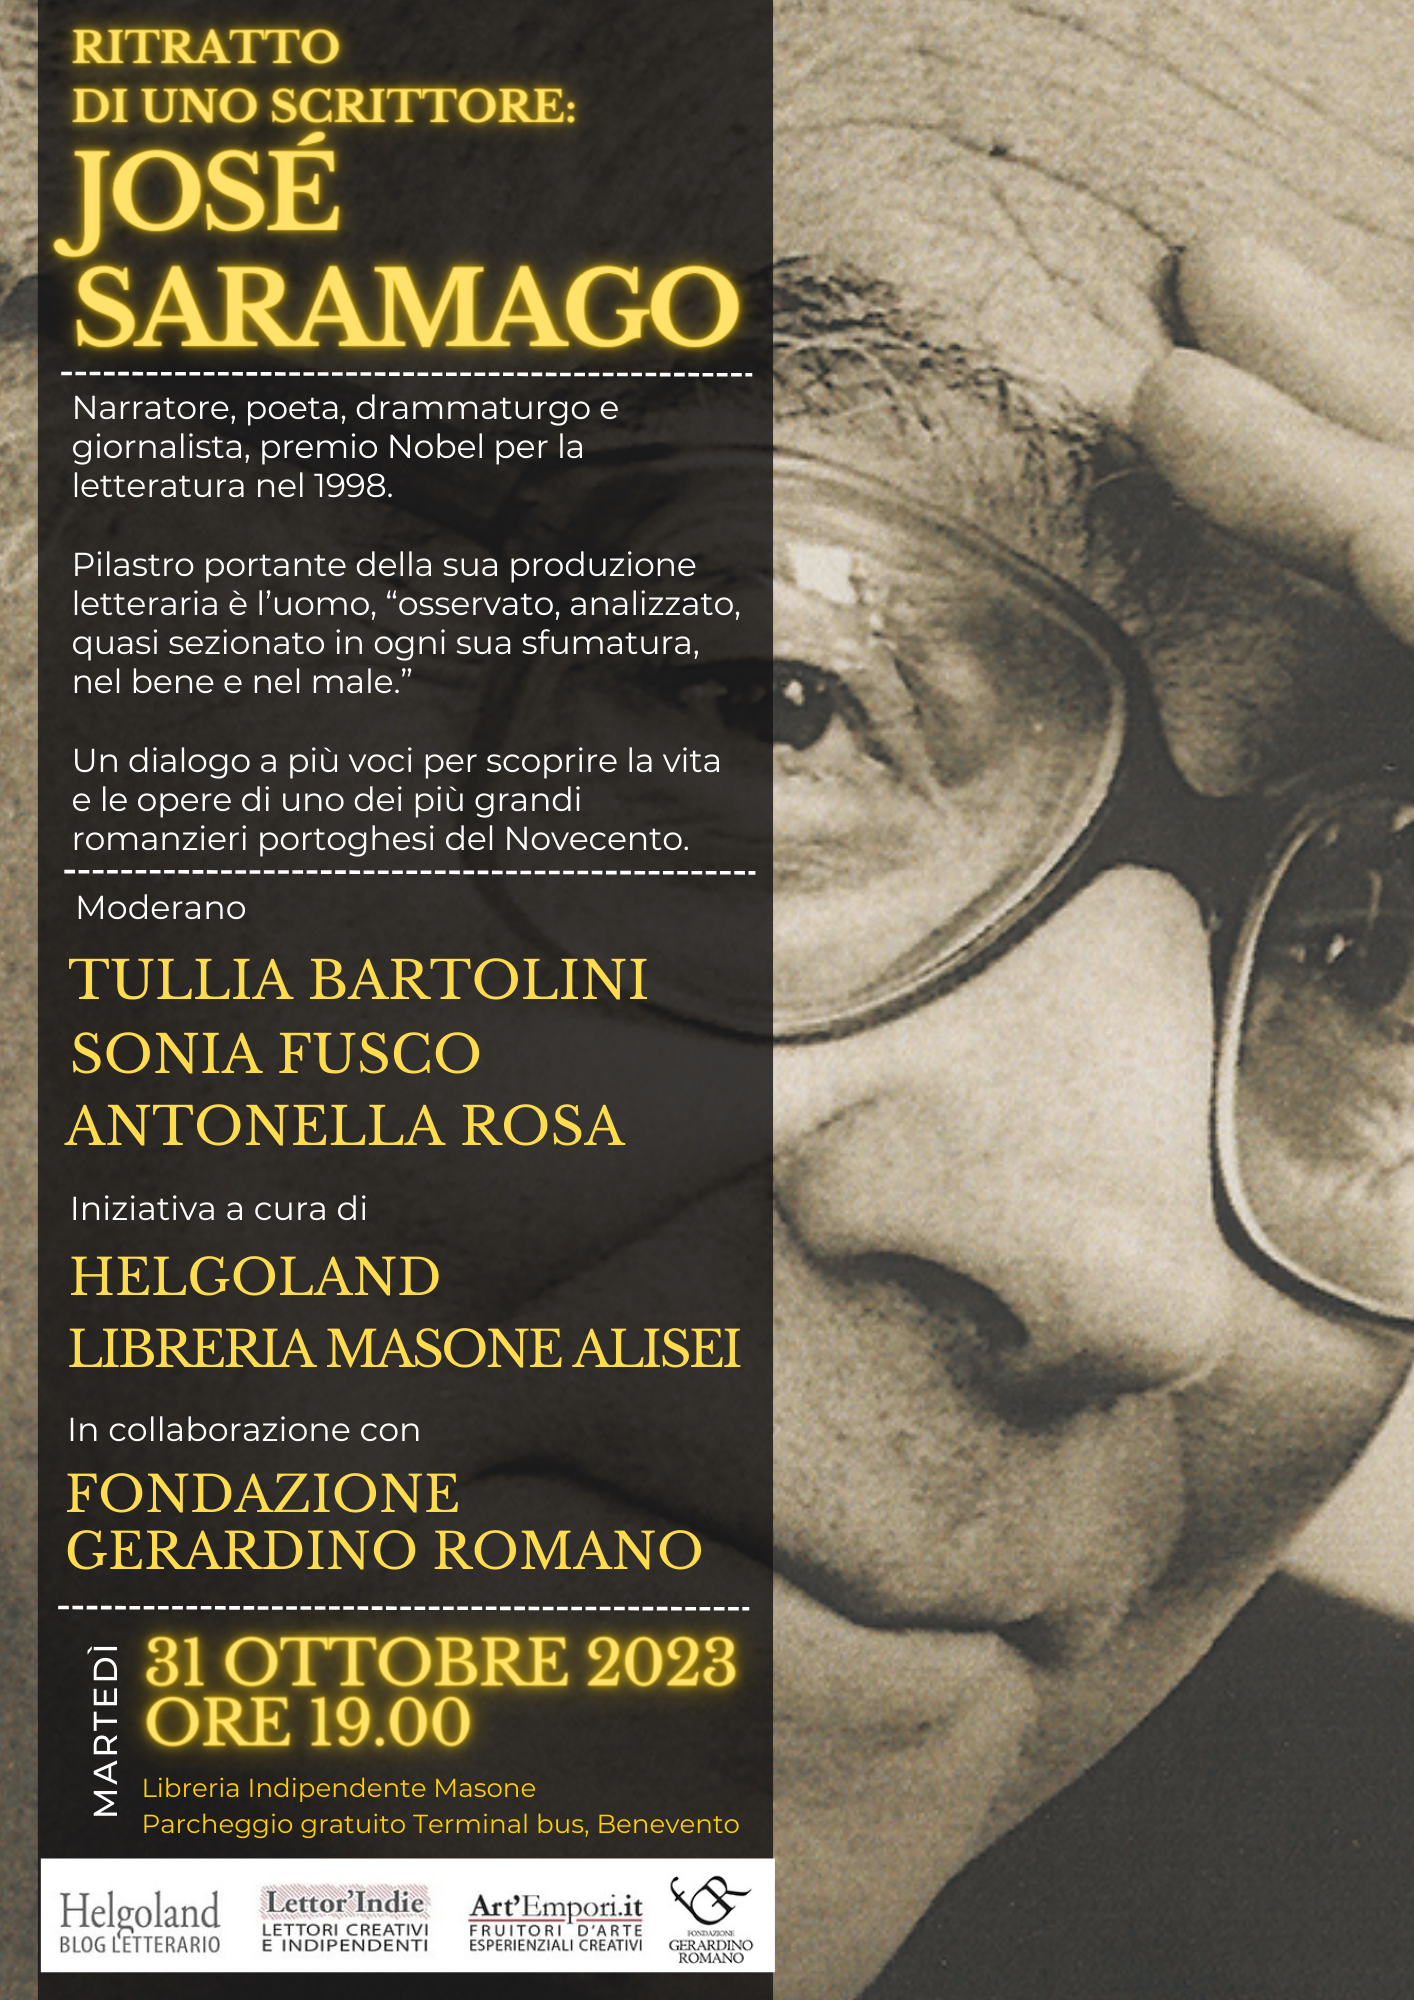 Ritratto di uno scrittore: José Saramago - Fondazione Gerardino Romano